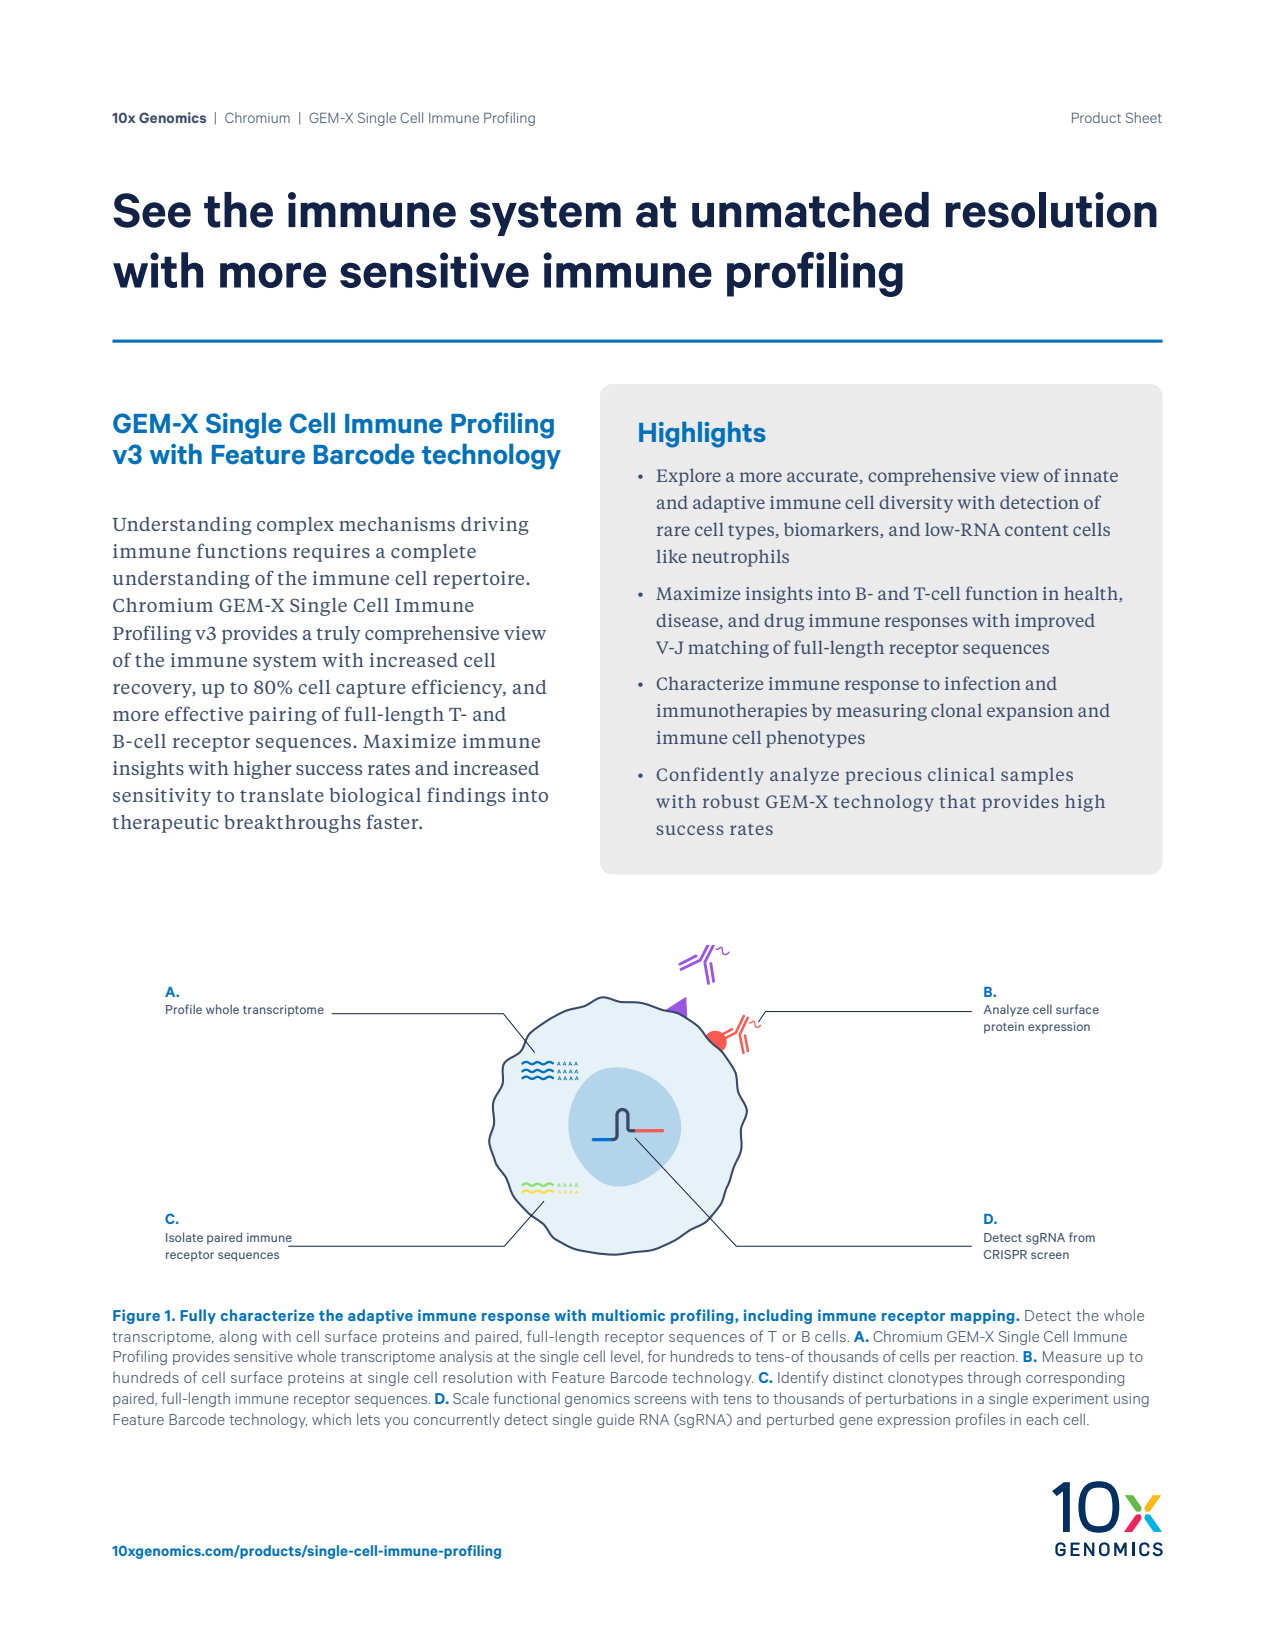 GEM-X Single Cell Immune Profiling v3 Product Sheet